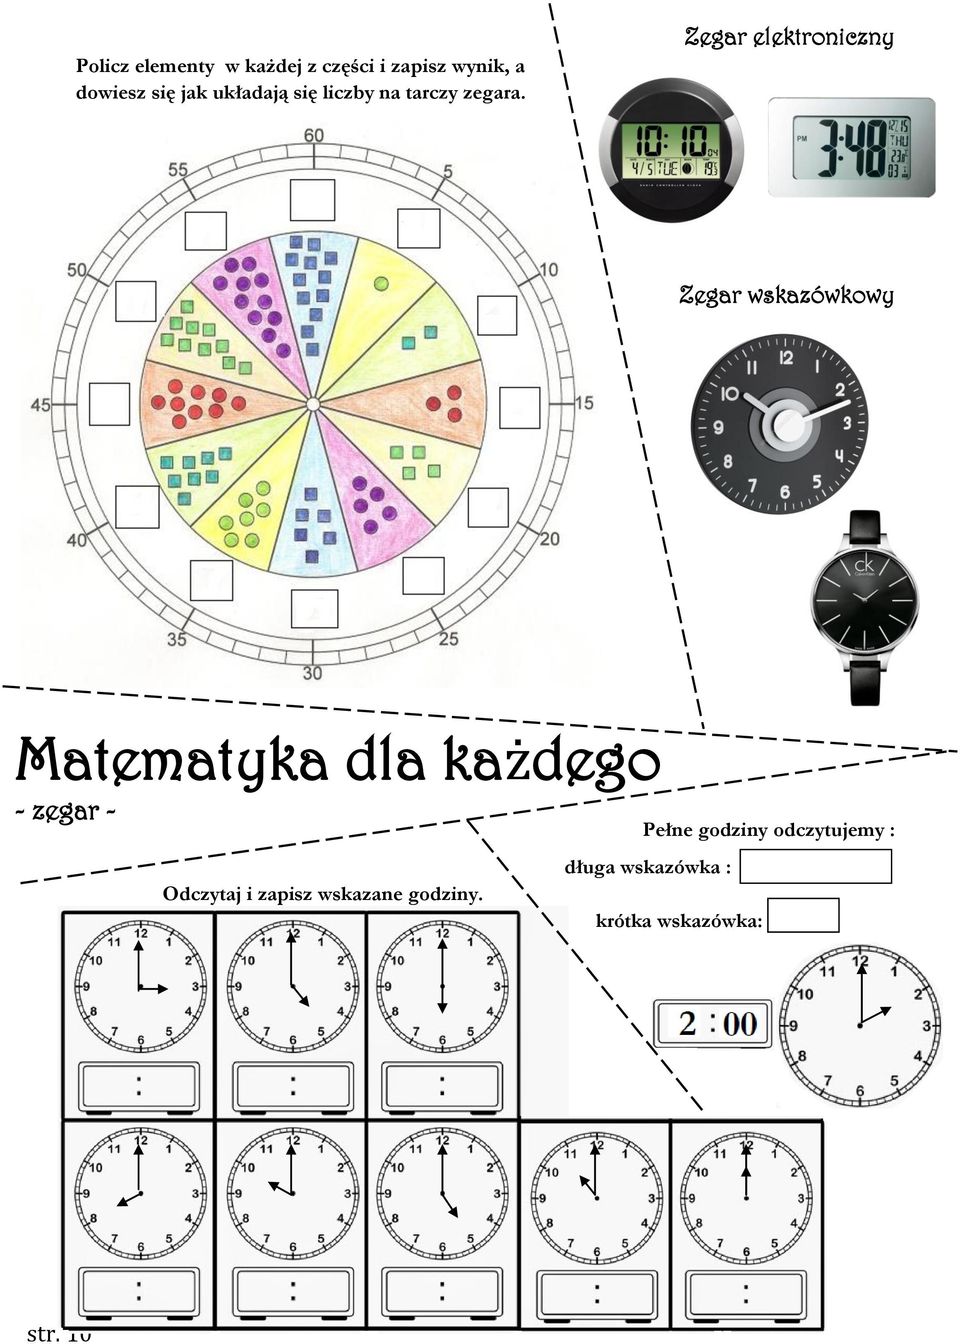 Zegar elektroniczny Zegar wskazówkowy Matematyka dla każdego - zegar -